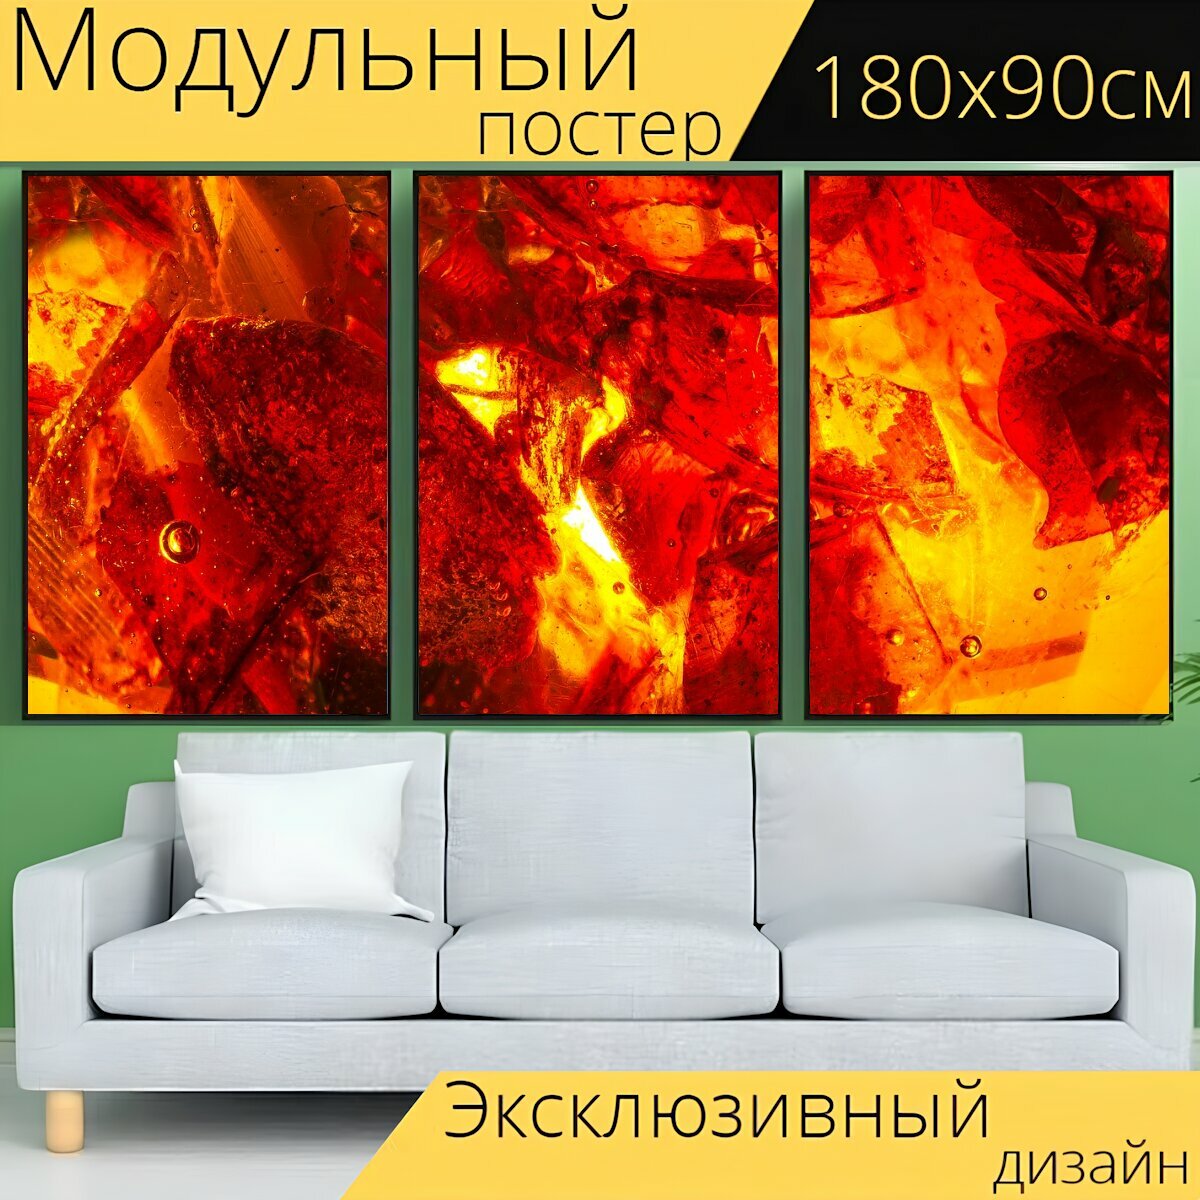 Модульный постер "Янтарь, сжигание каменного, драгоценный камень" 180 x 90 см. для интерьера